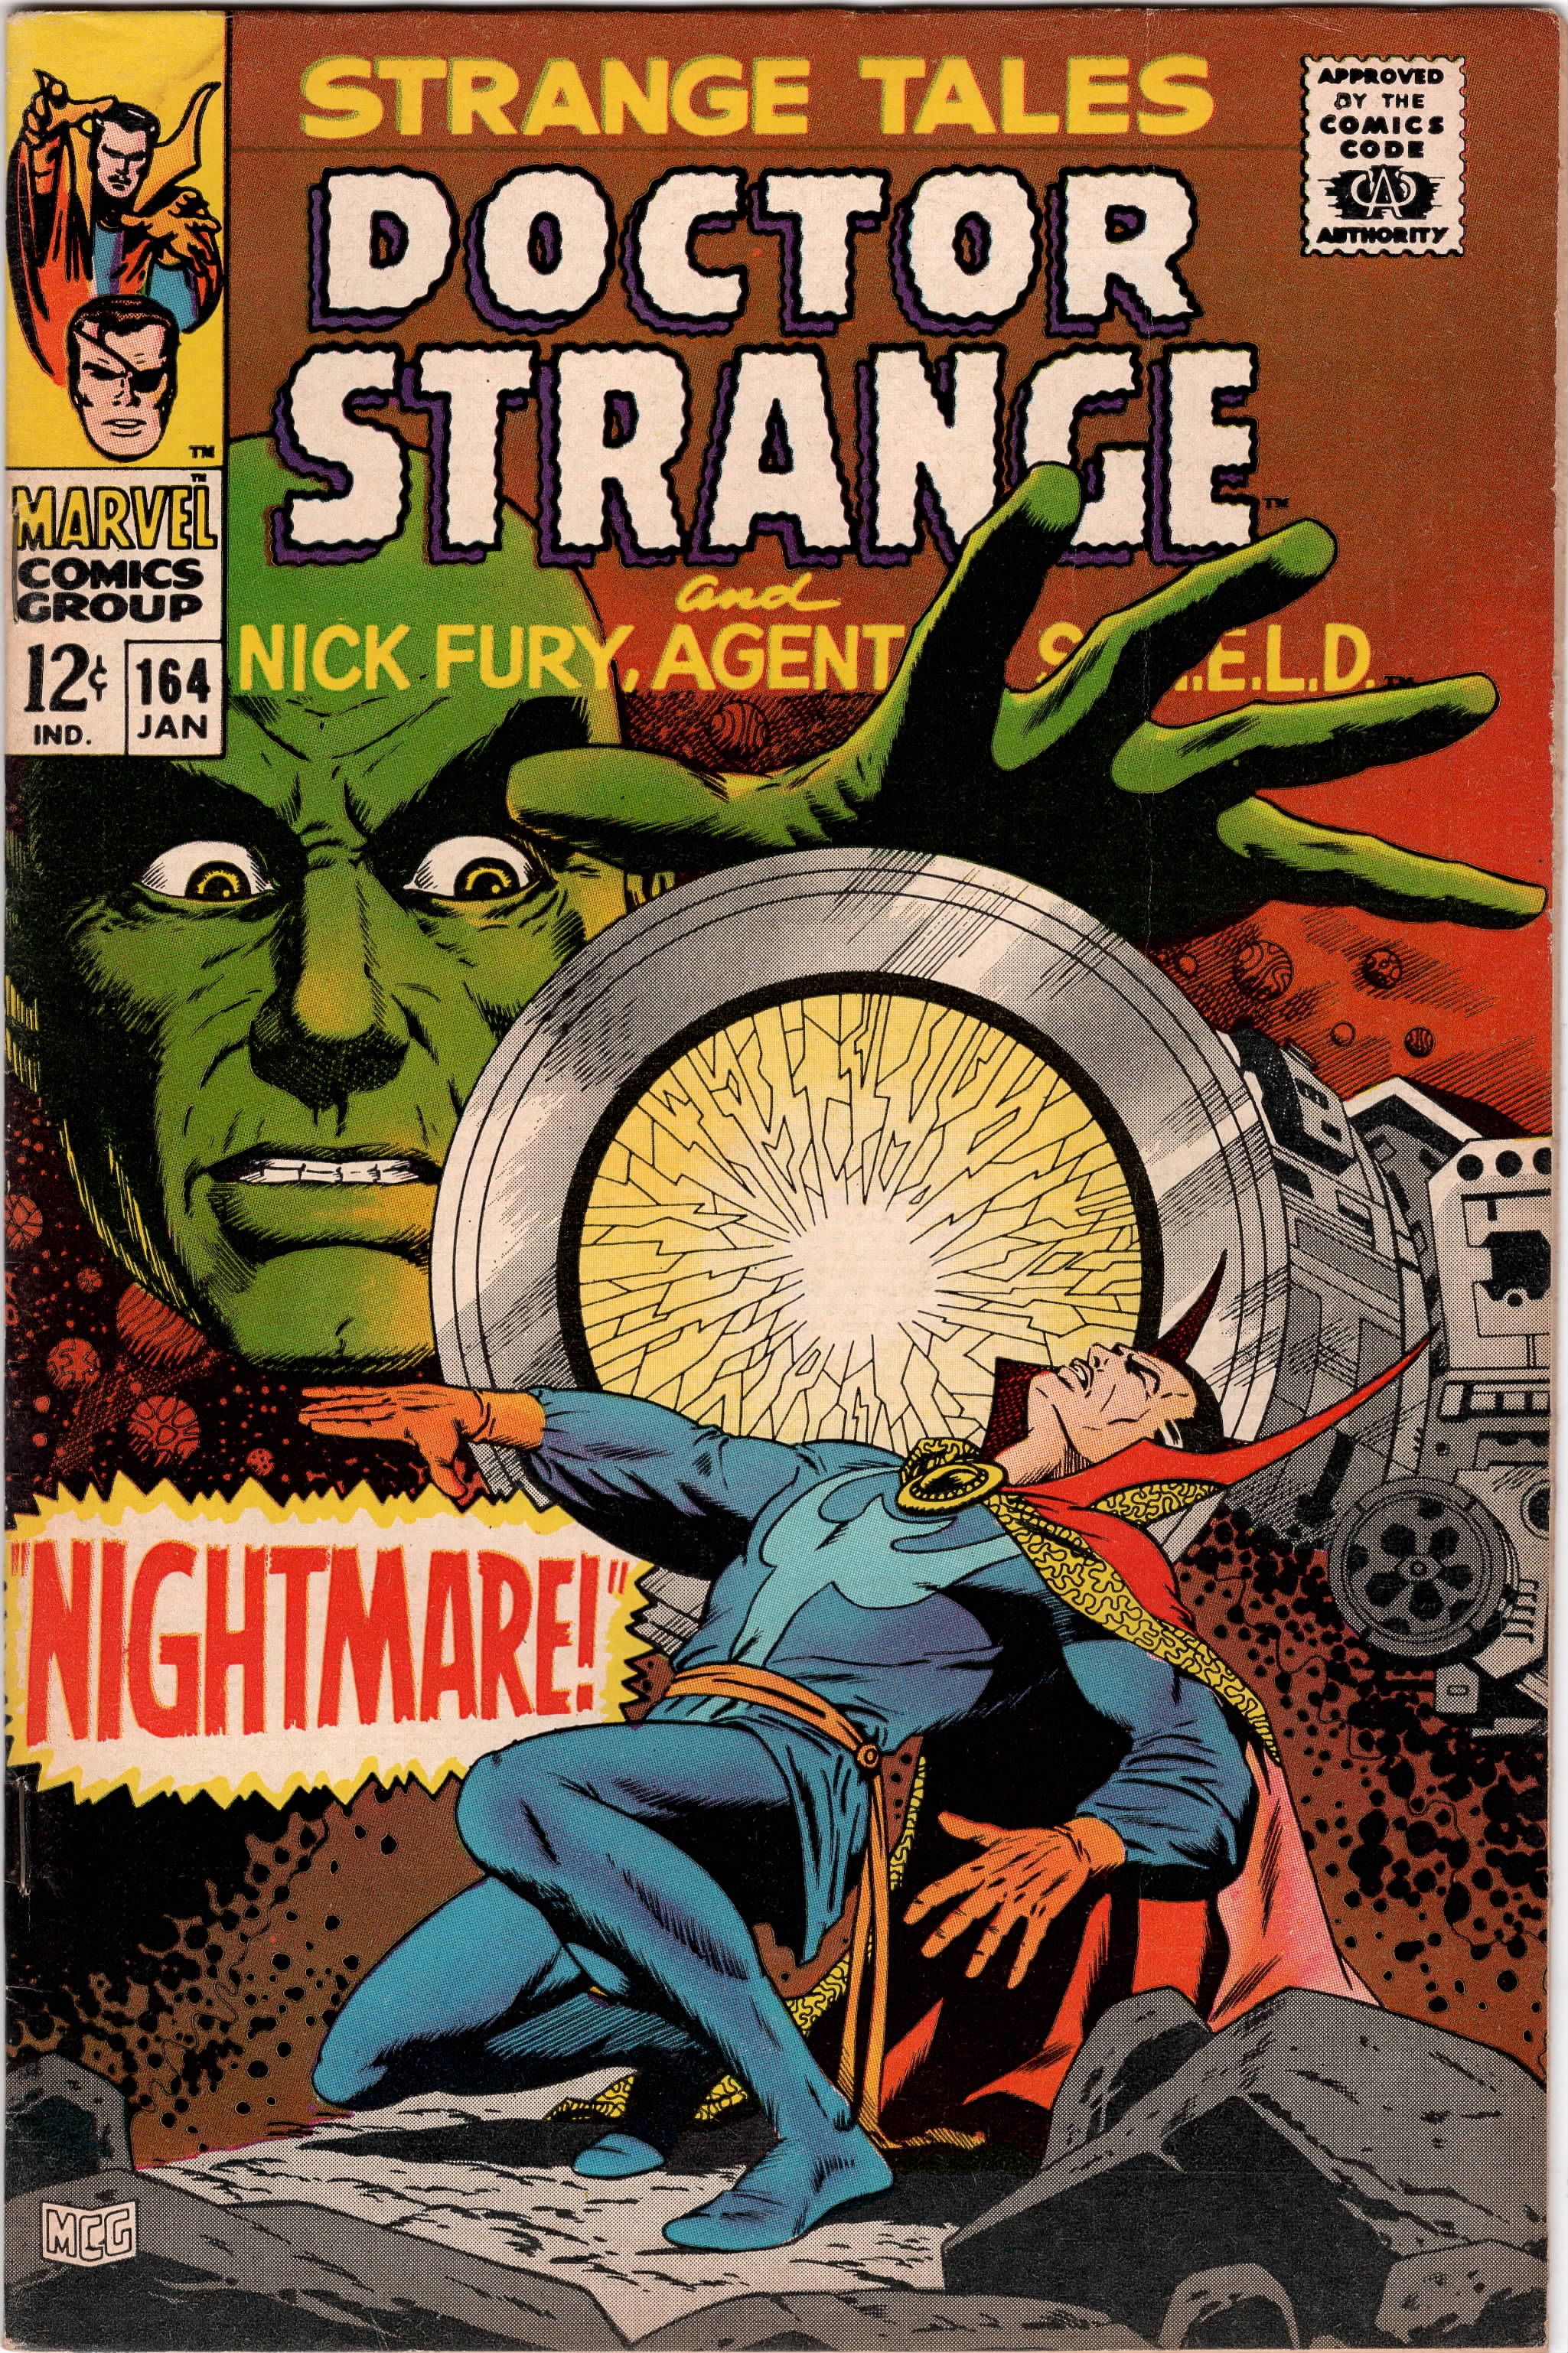 Strange Tales (Vol 1) #164